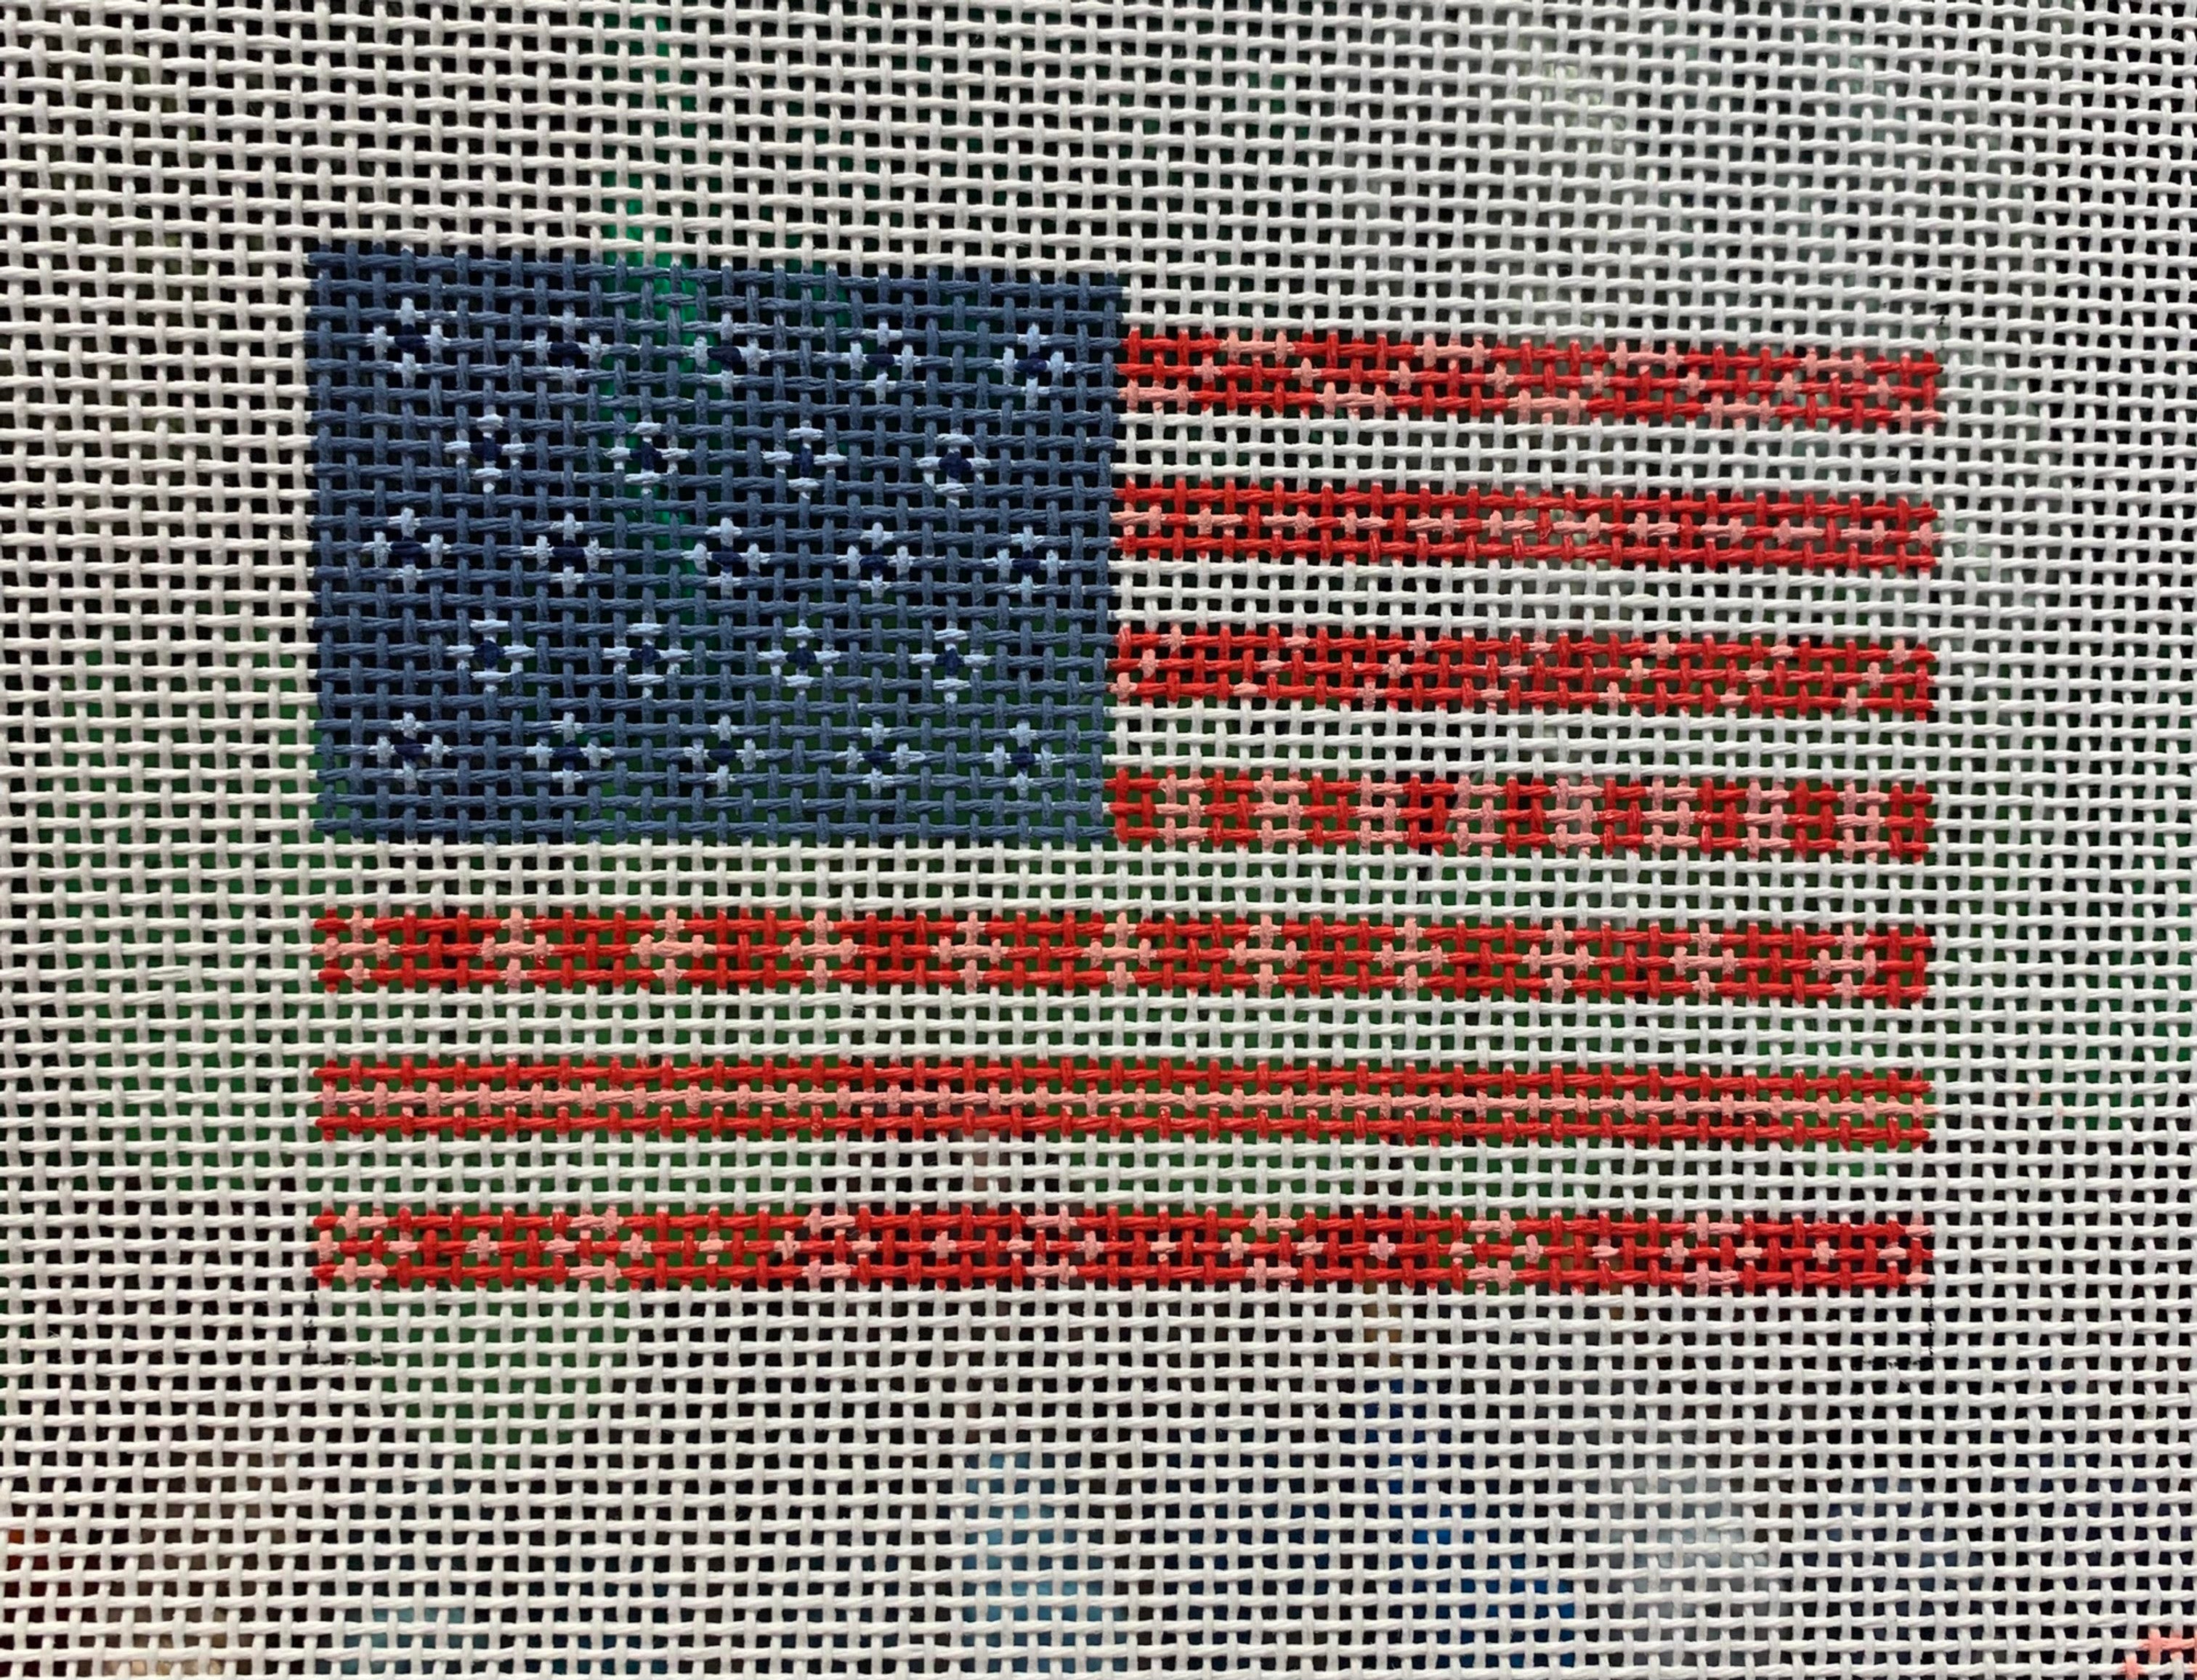 Rachel Barri RR113 USA Flag 3x4.5